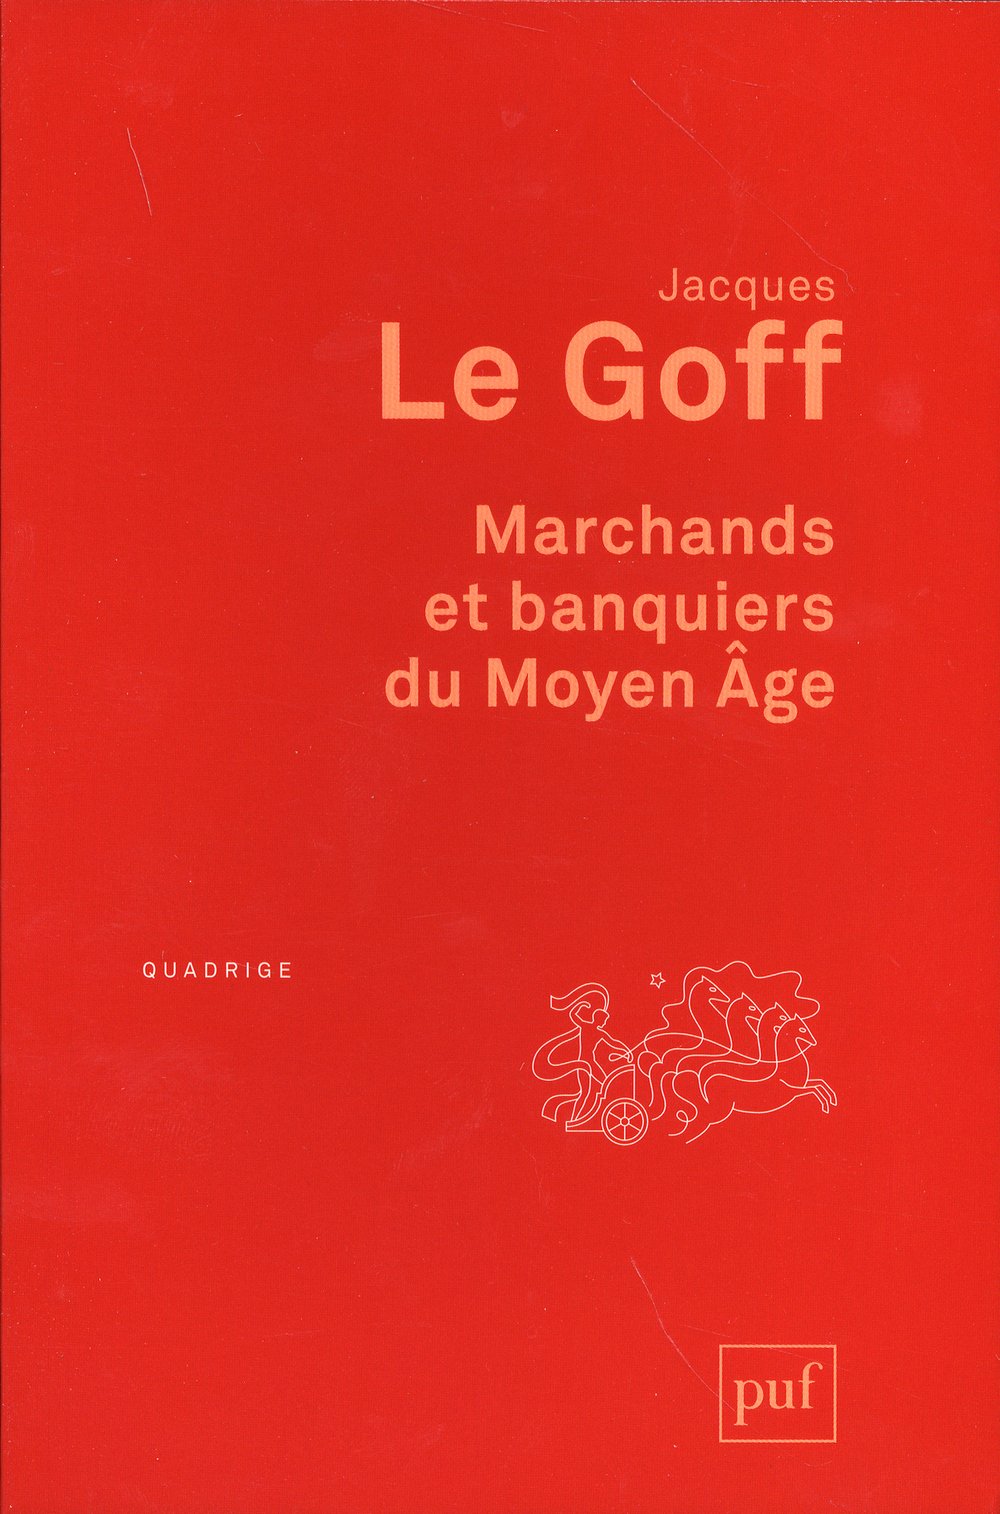 Marchands et banquiers du Moyen Age, 2014, 144 p.